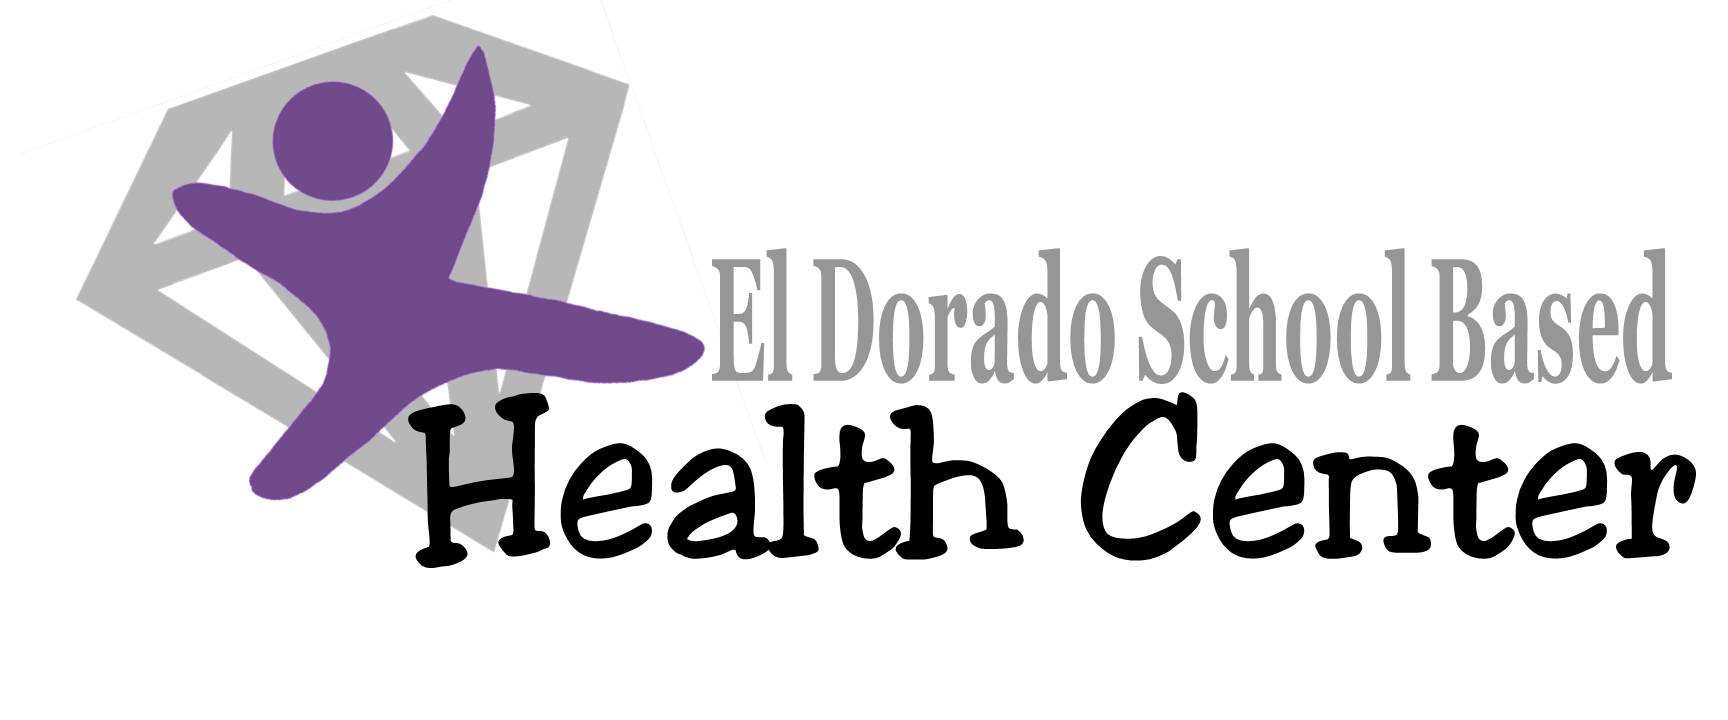 EL DORADO SCHOOL BASED HEALTH CENTER